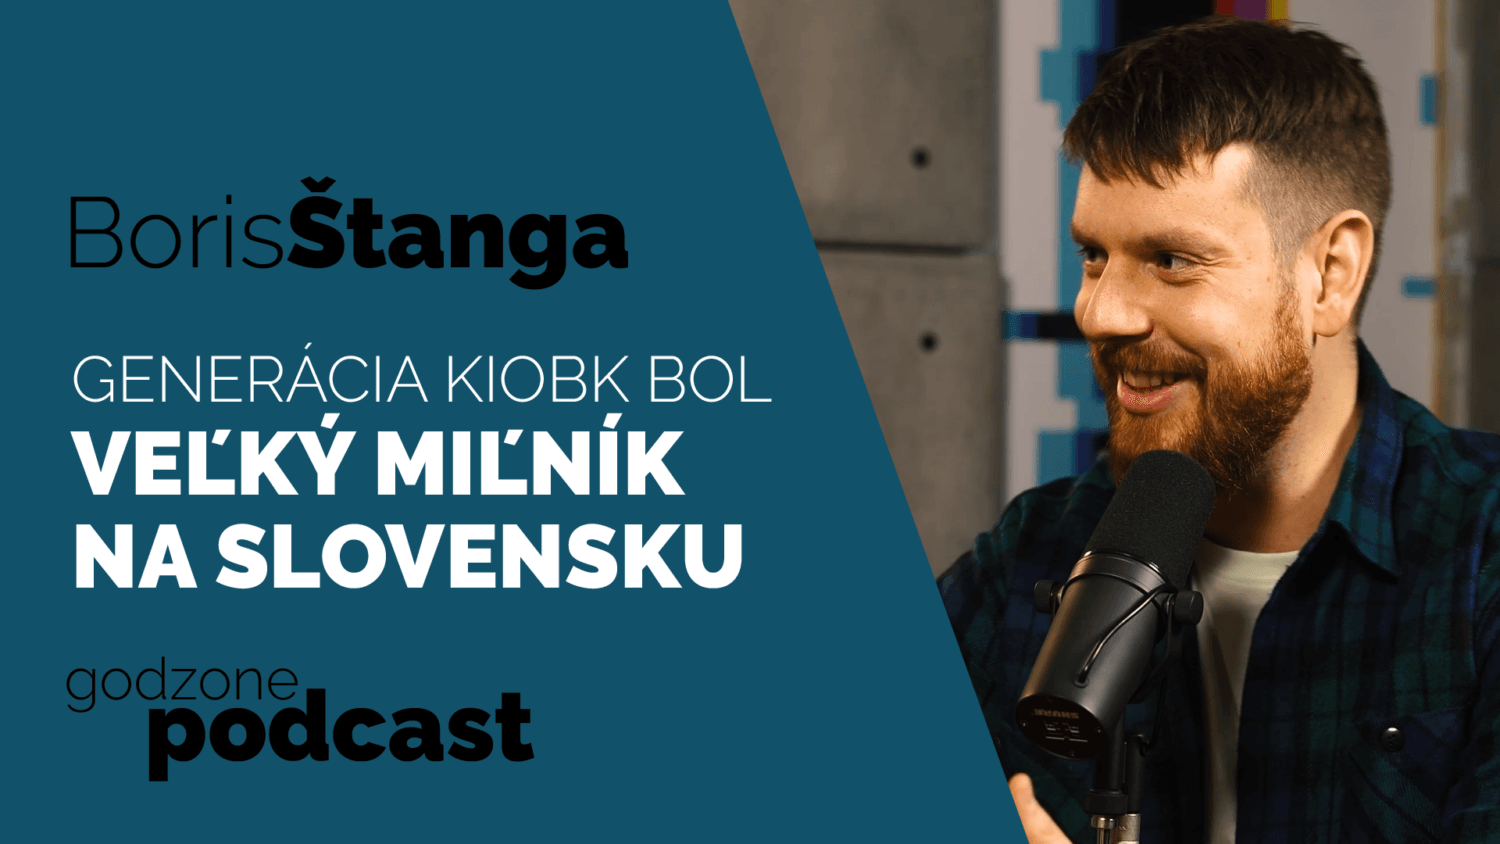 Godzone podcast_Boris Štanga: Generácia Kiobk bol veľký miľník na Slovensku